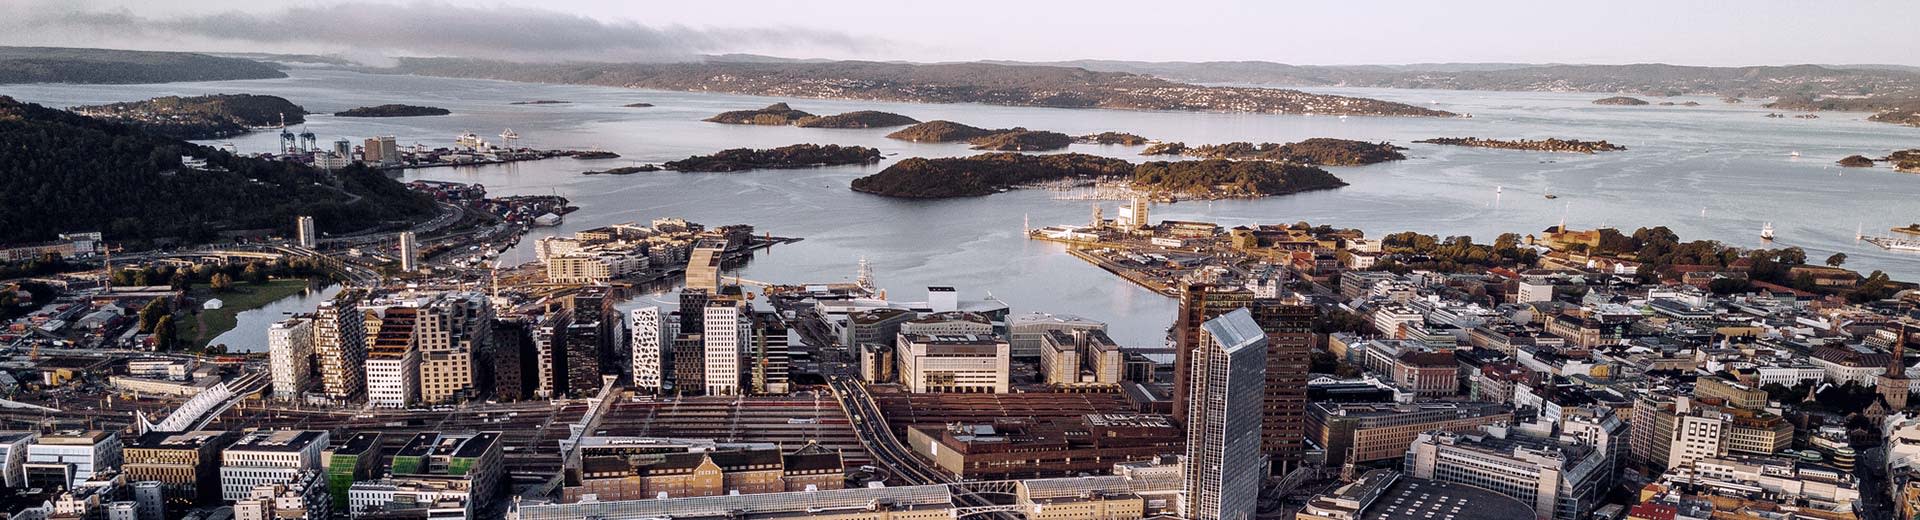 Les grands bâtiments d'Oslo surplombent la côte de la Norvège par une journée froide et claire.